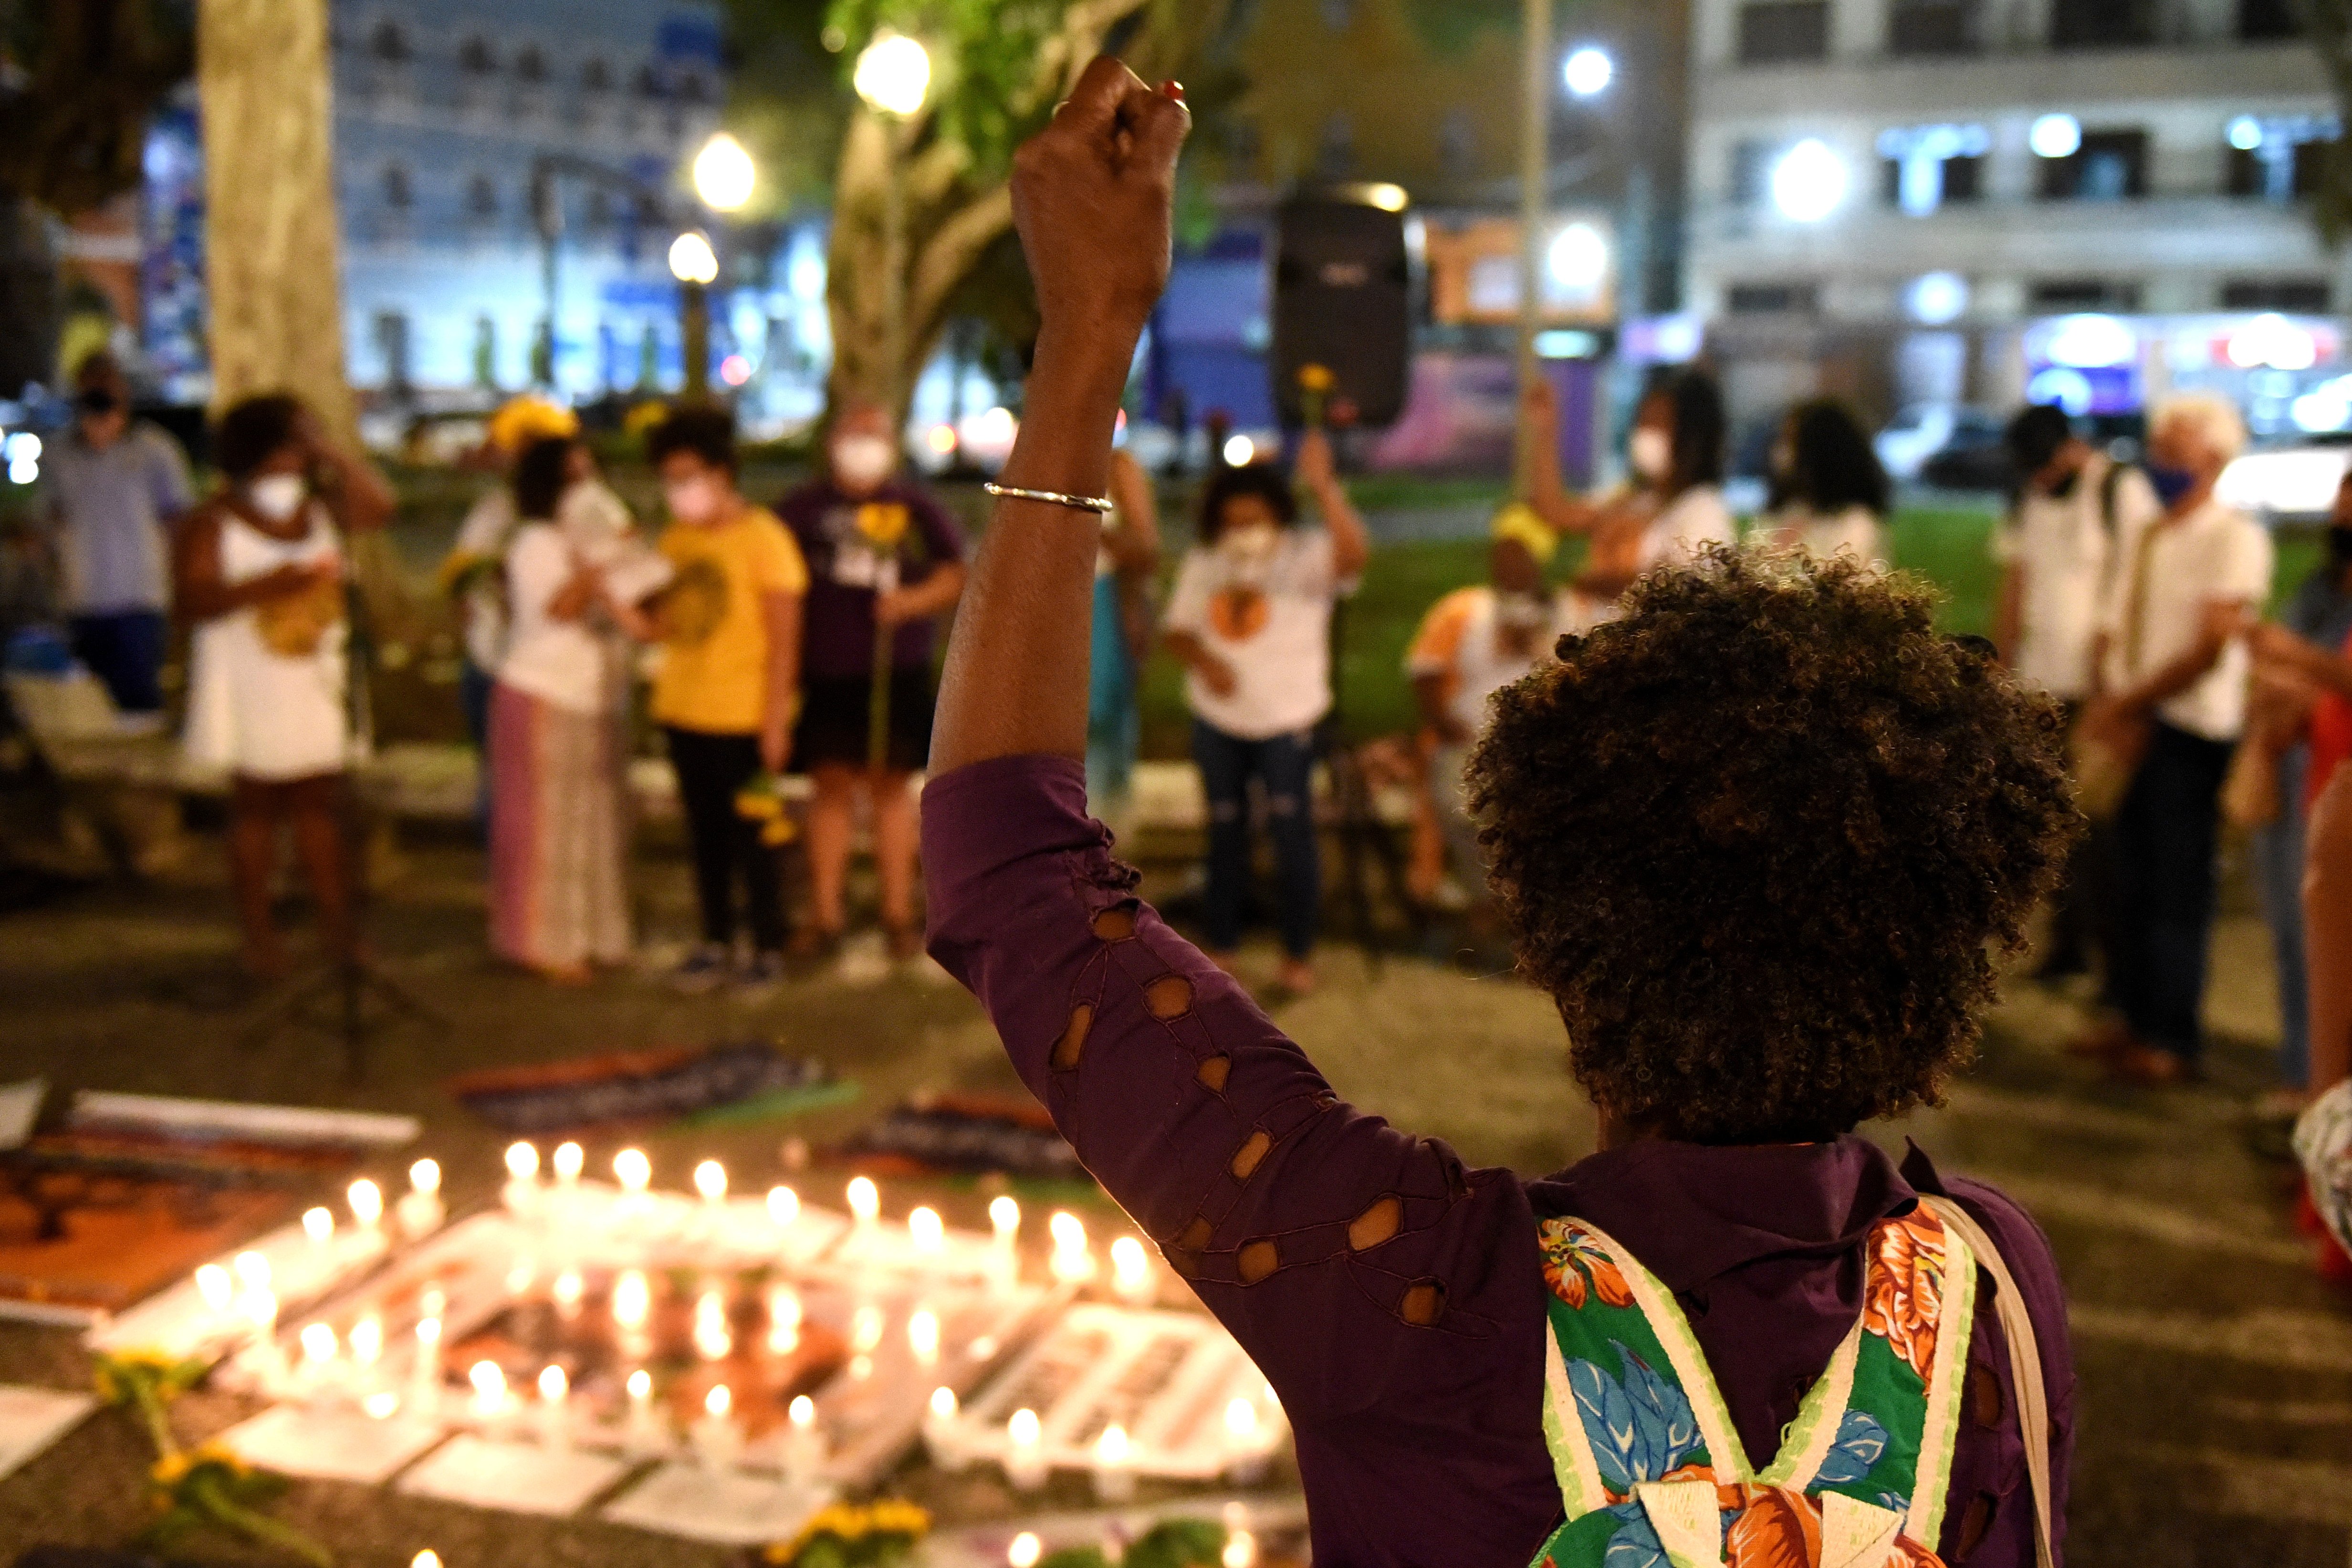  Vitória - Vigília pelo fim dos feminicídios  e da violência contra as mulheres, realizado na Praça Costa Pereira, Centro de Vitória